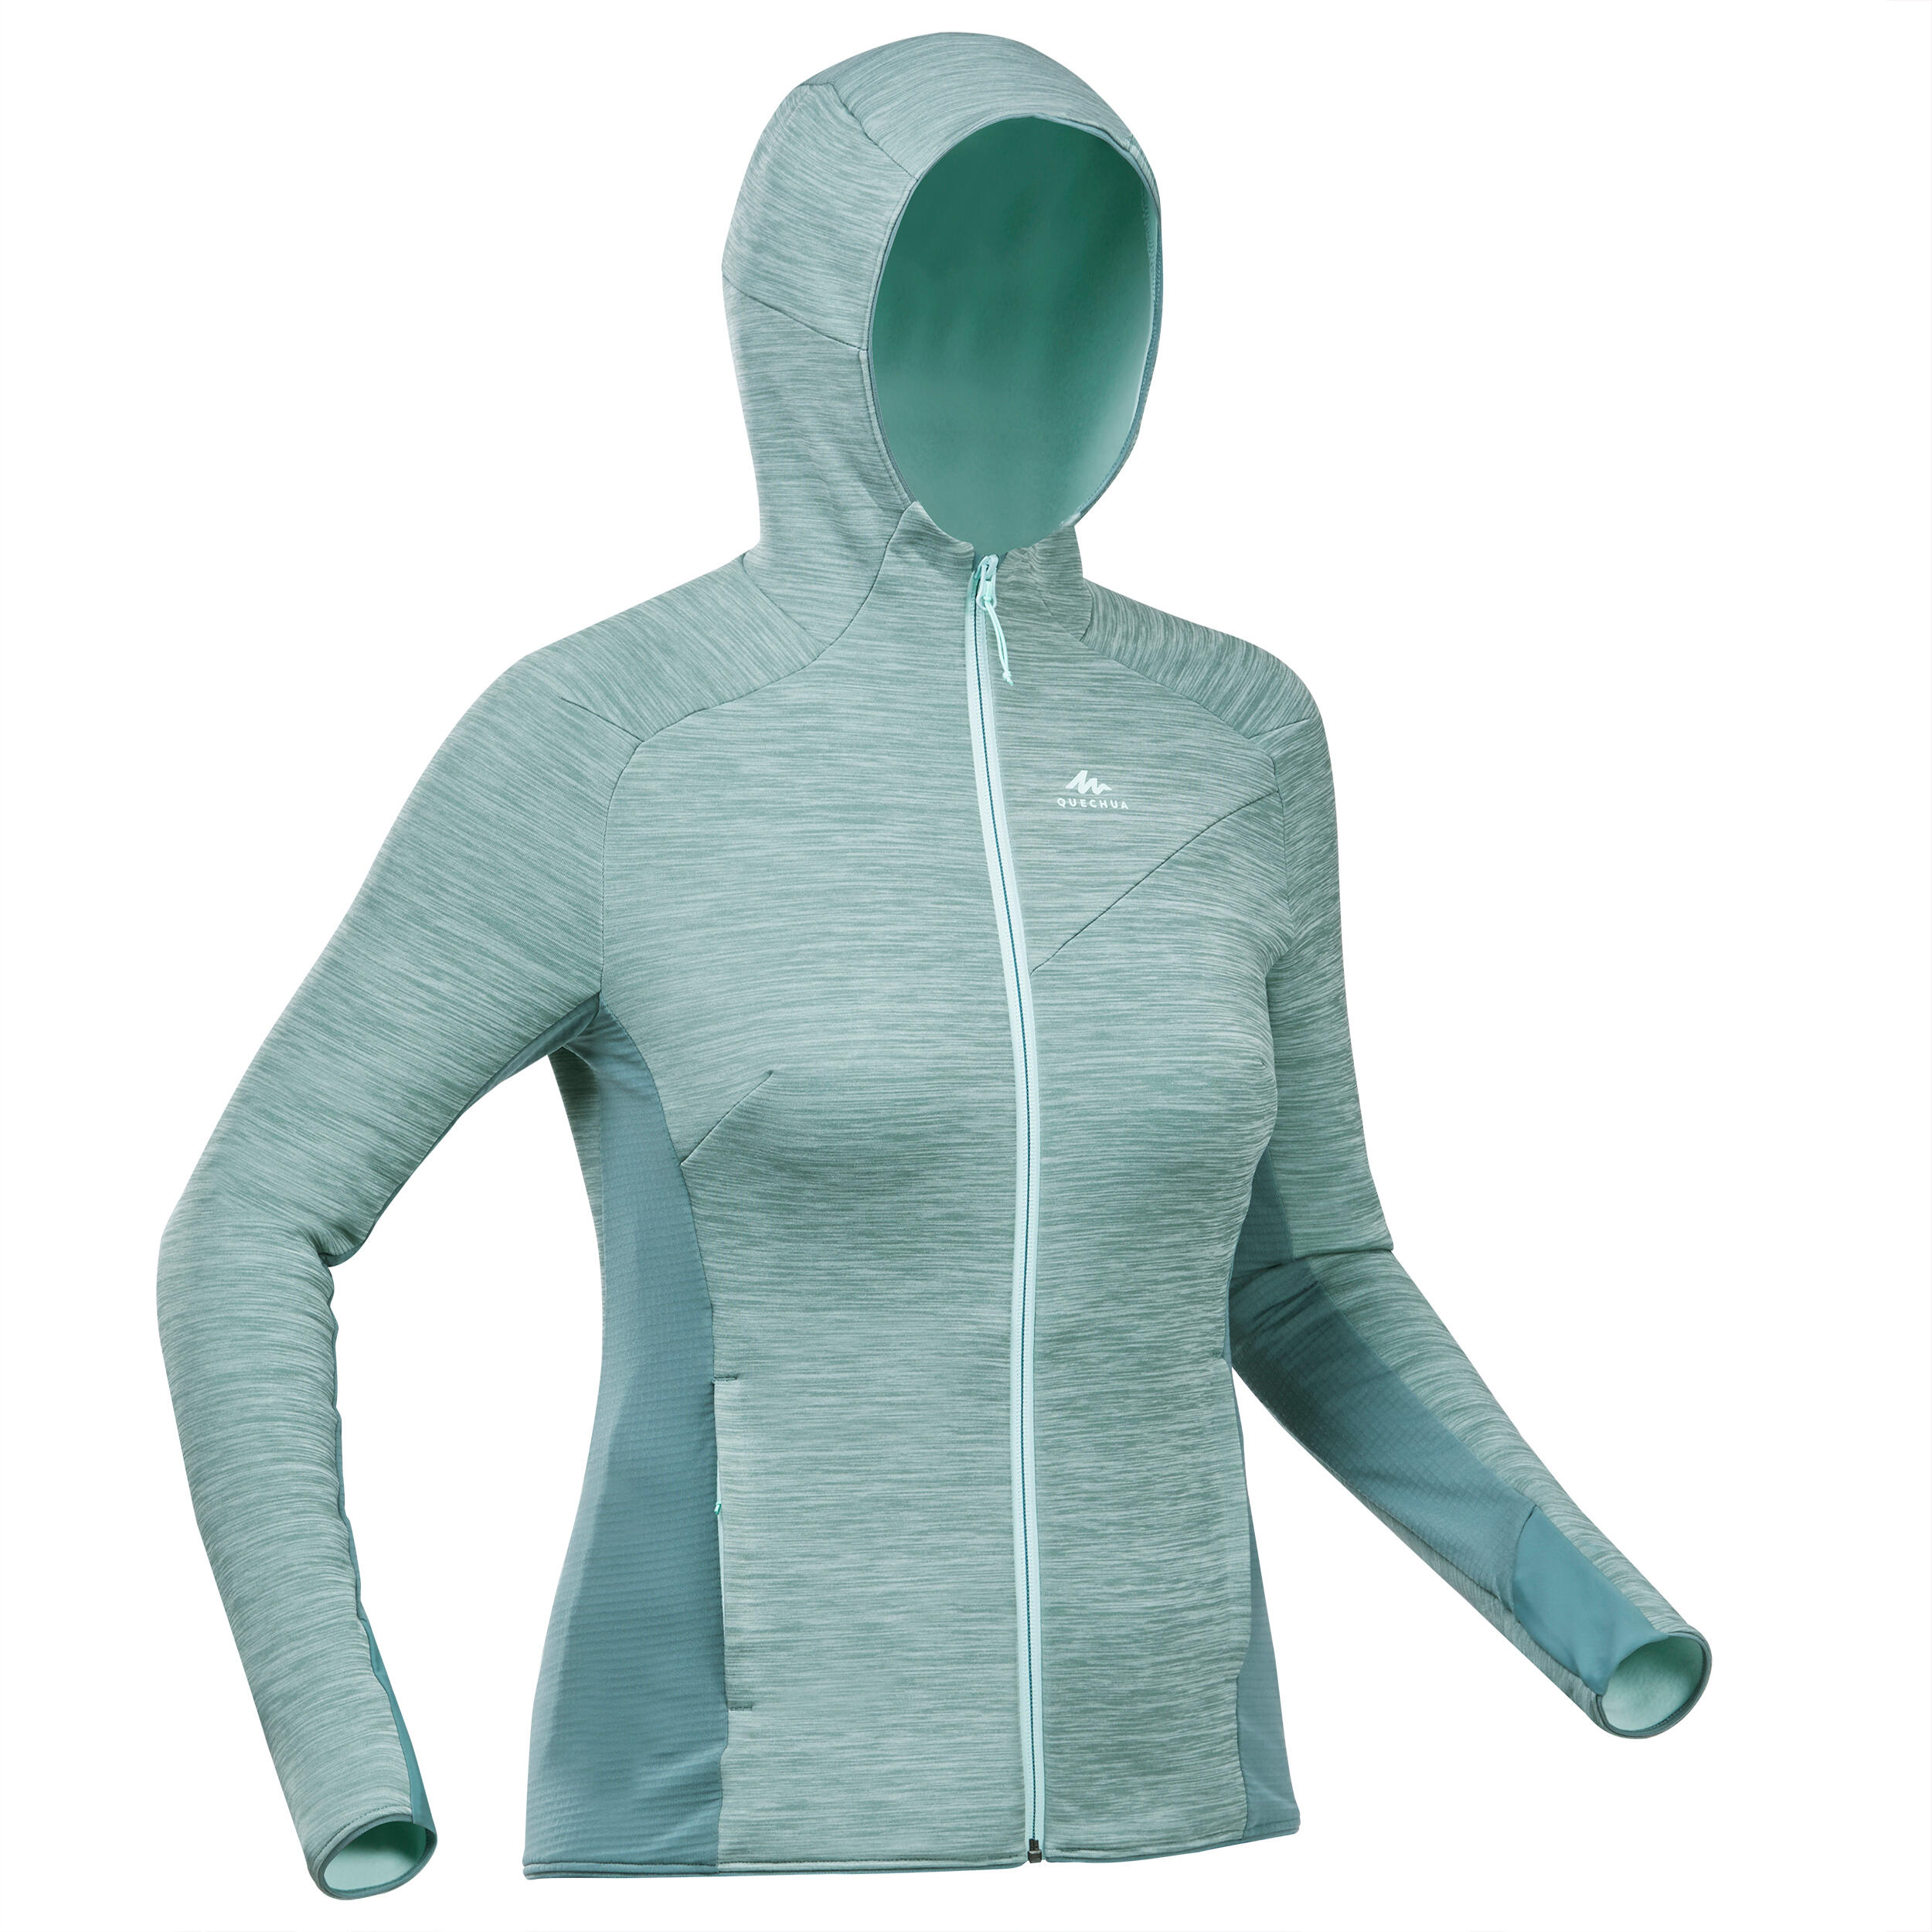 discount 38% WOMEN FASHION Jumpers & Sweatshirts Fleece Kalenji sweatshirt Gray/Blue 38                  EU 